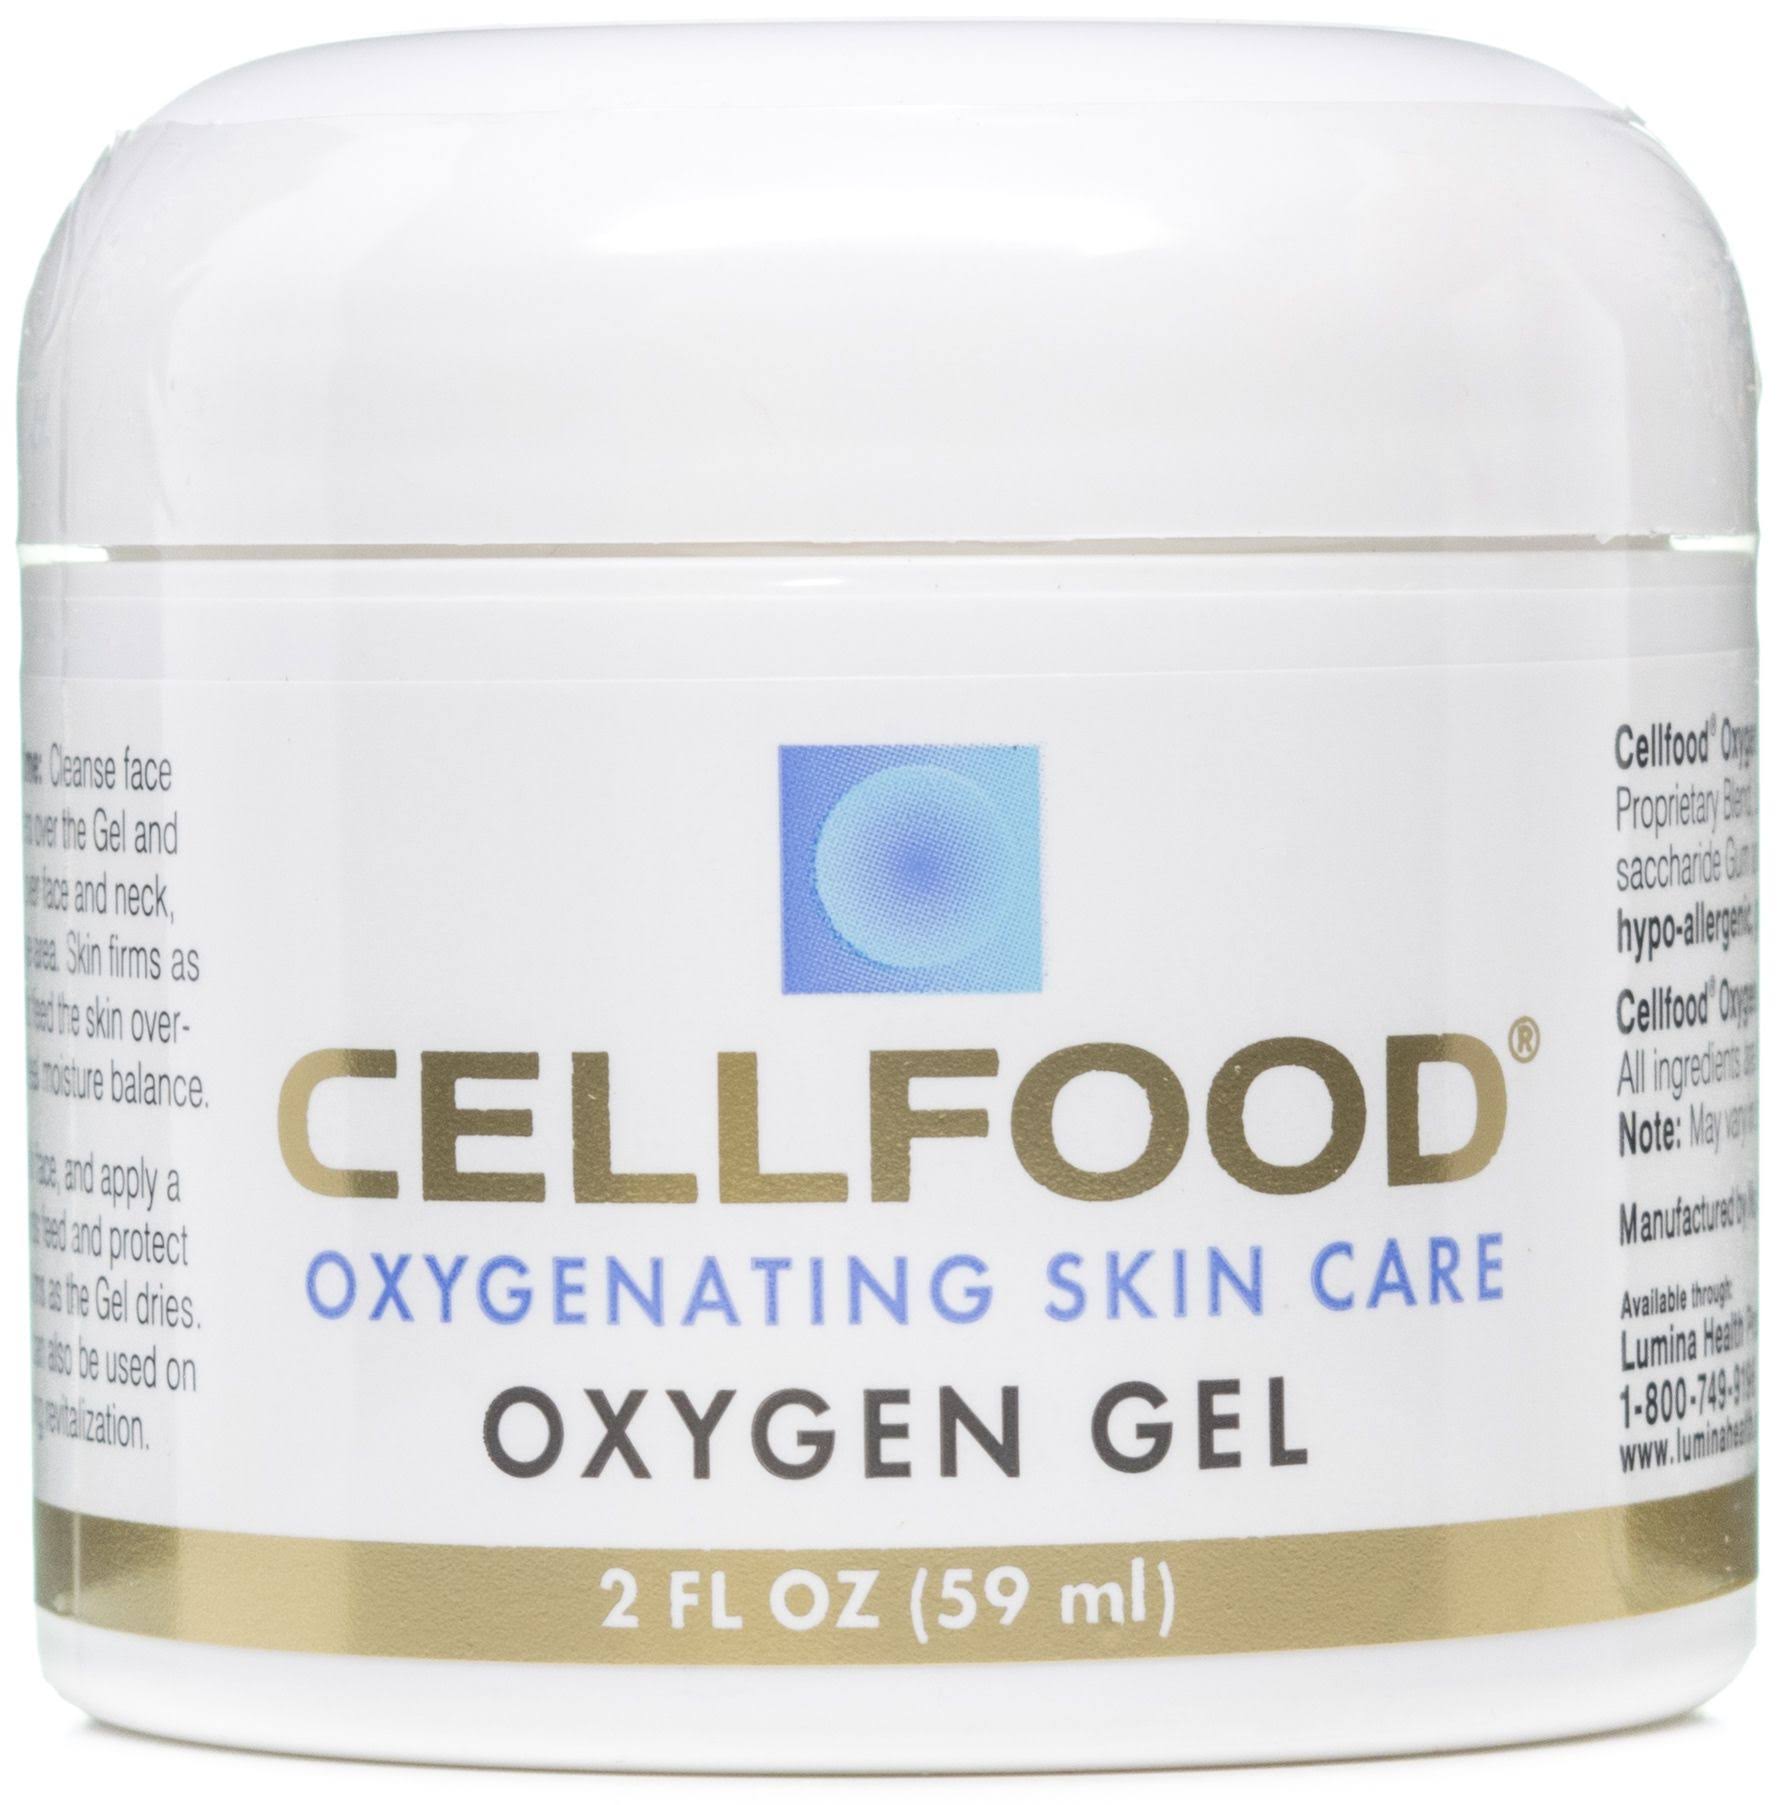 Cellfood Skin Care Oxygen Gel - 2 Oz